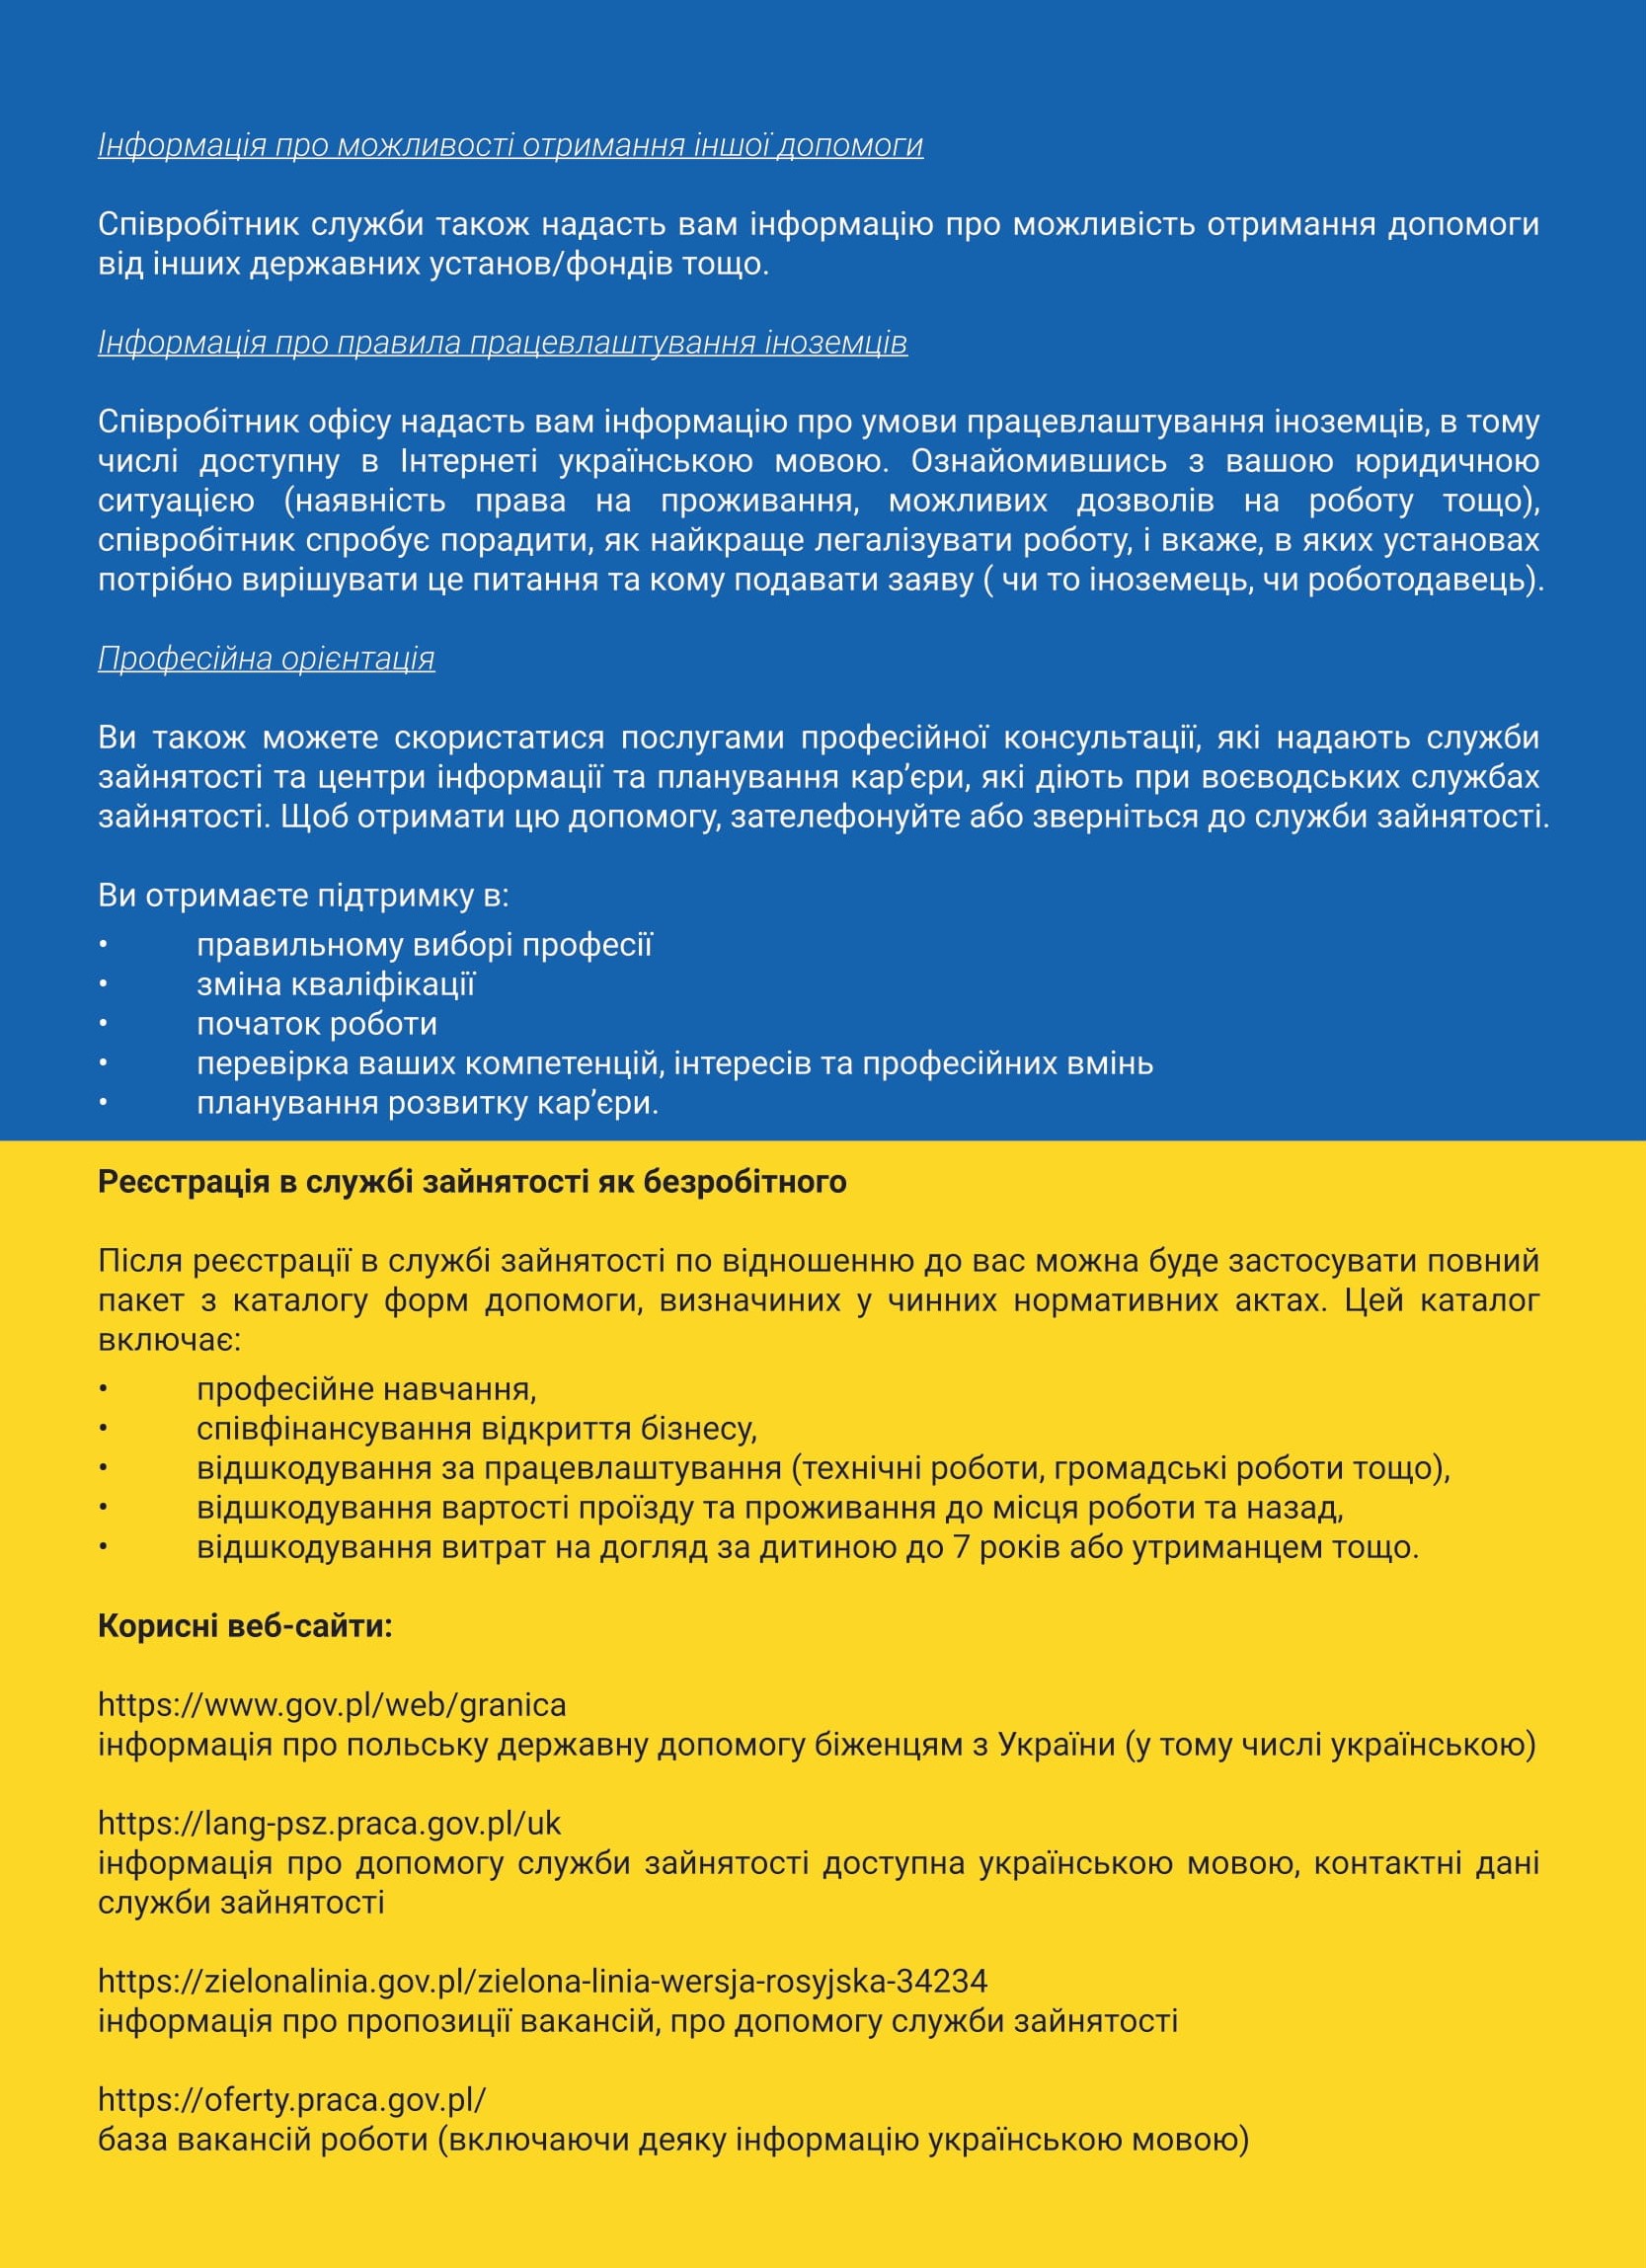 Informacja dla obywateli Ukrainy poszukujących pracy